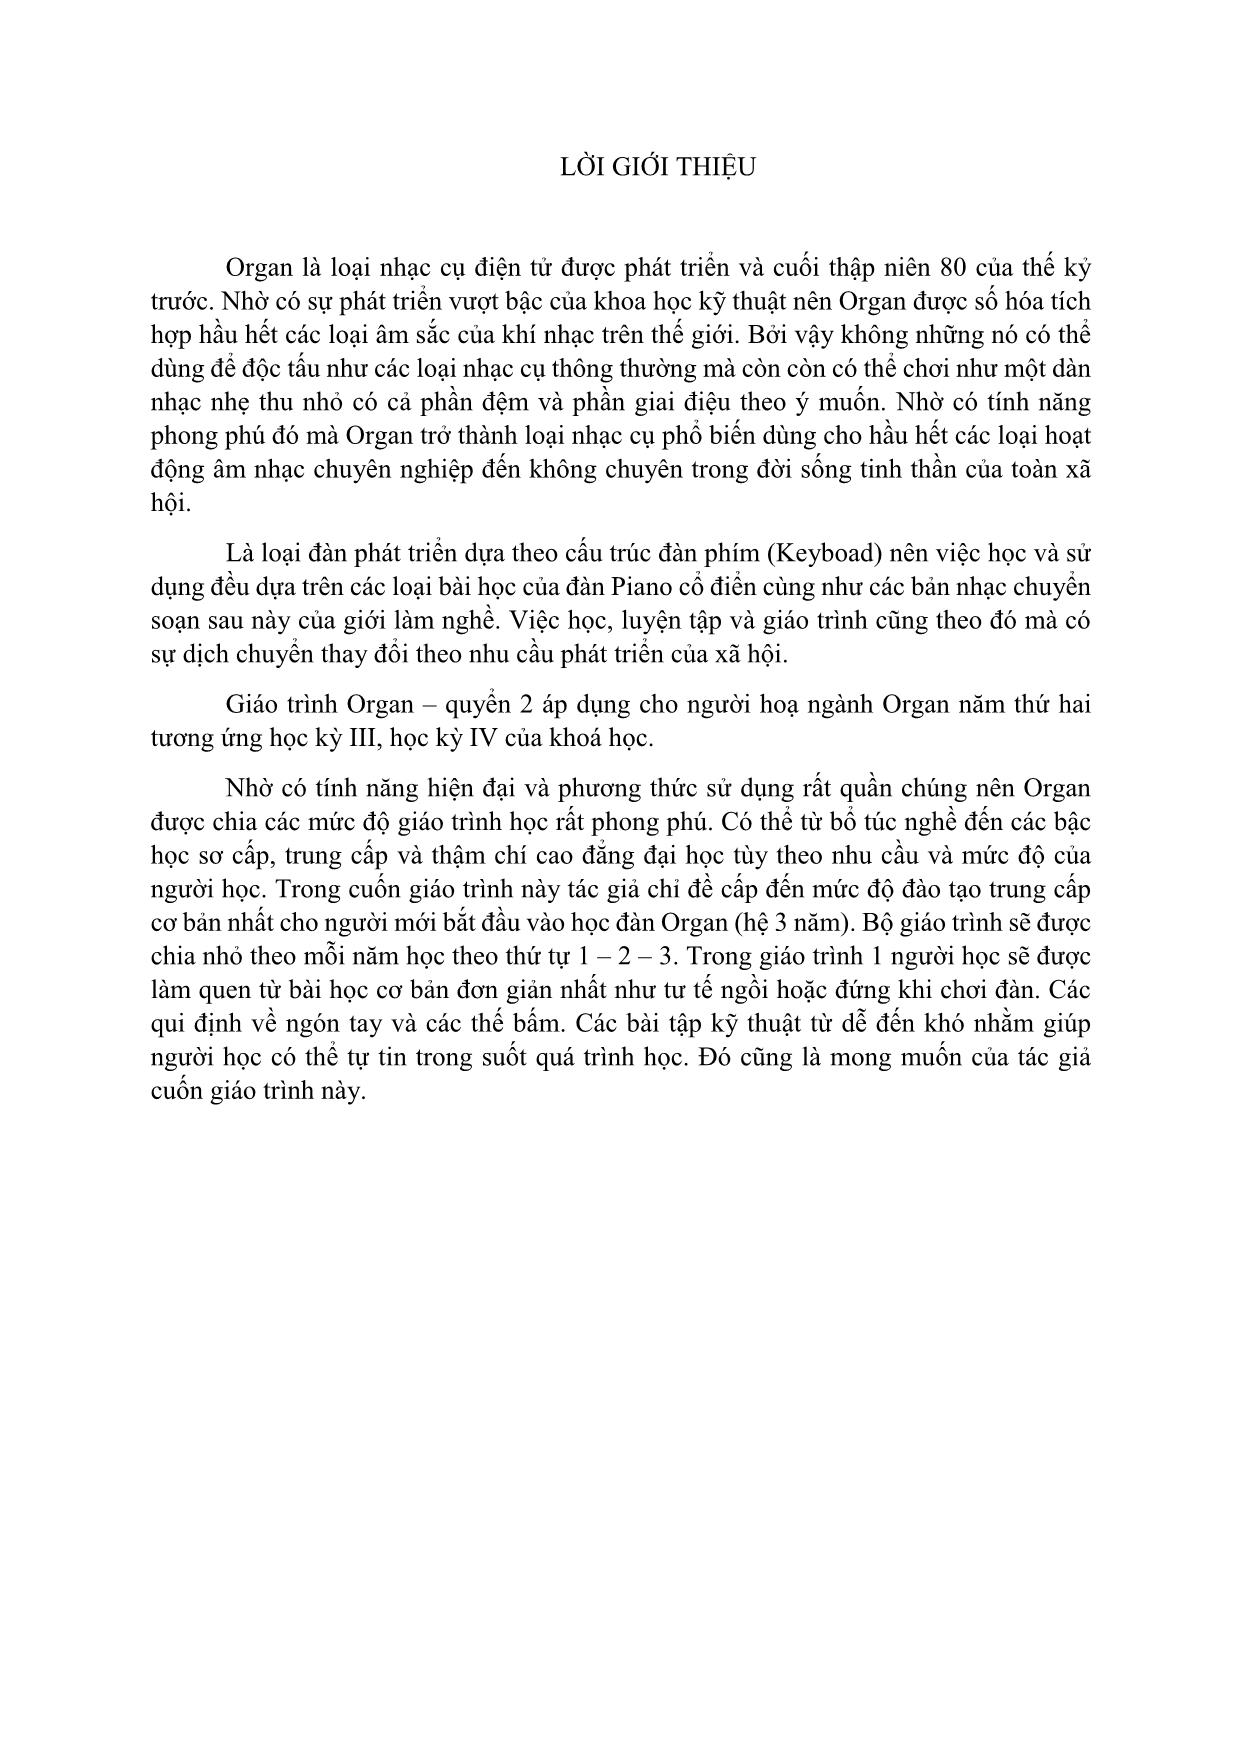 Giáo trình Organ (Quyển 2) trang 3